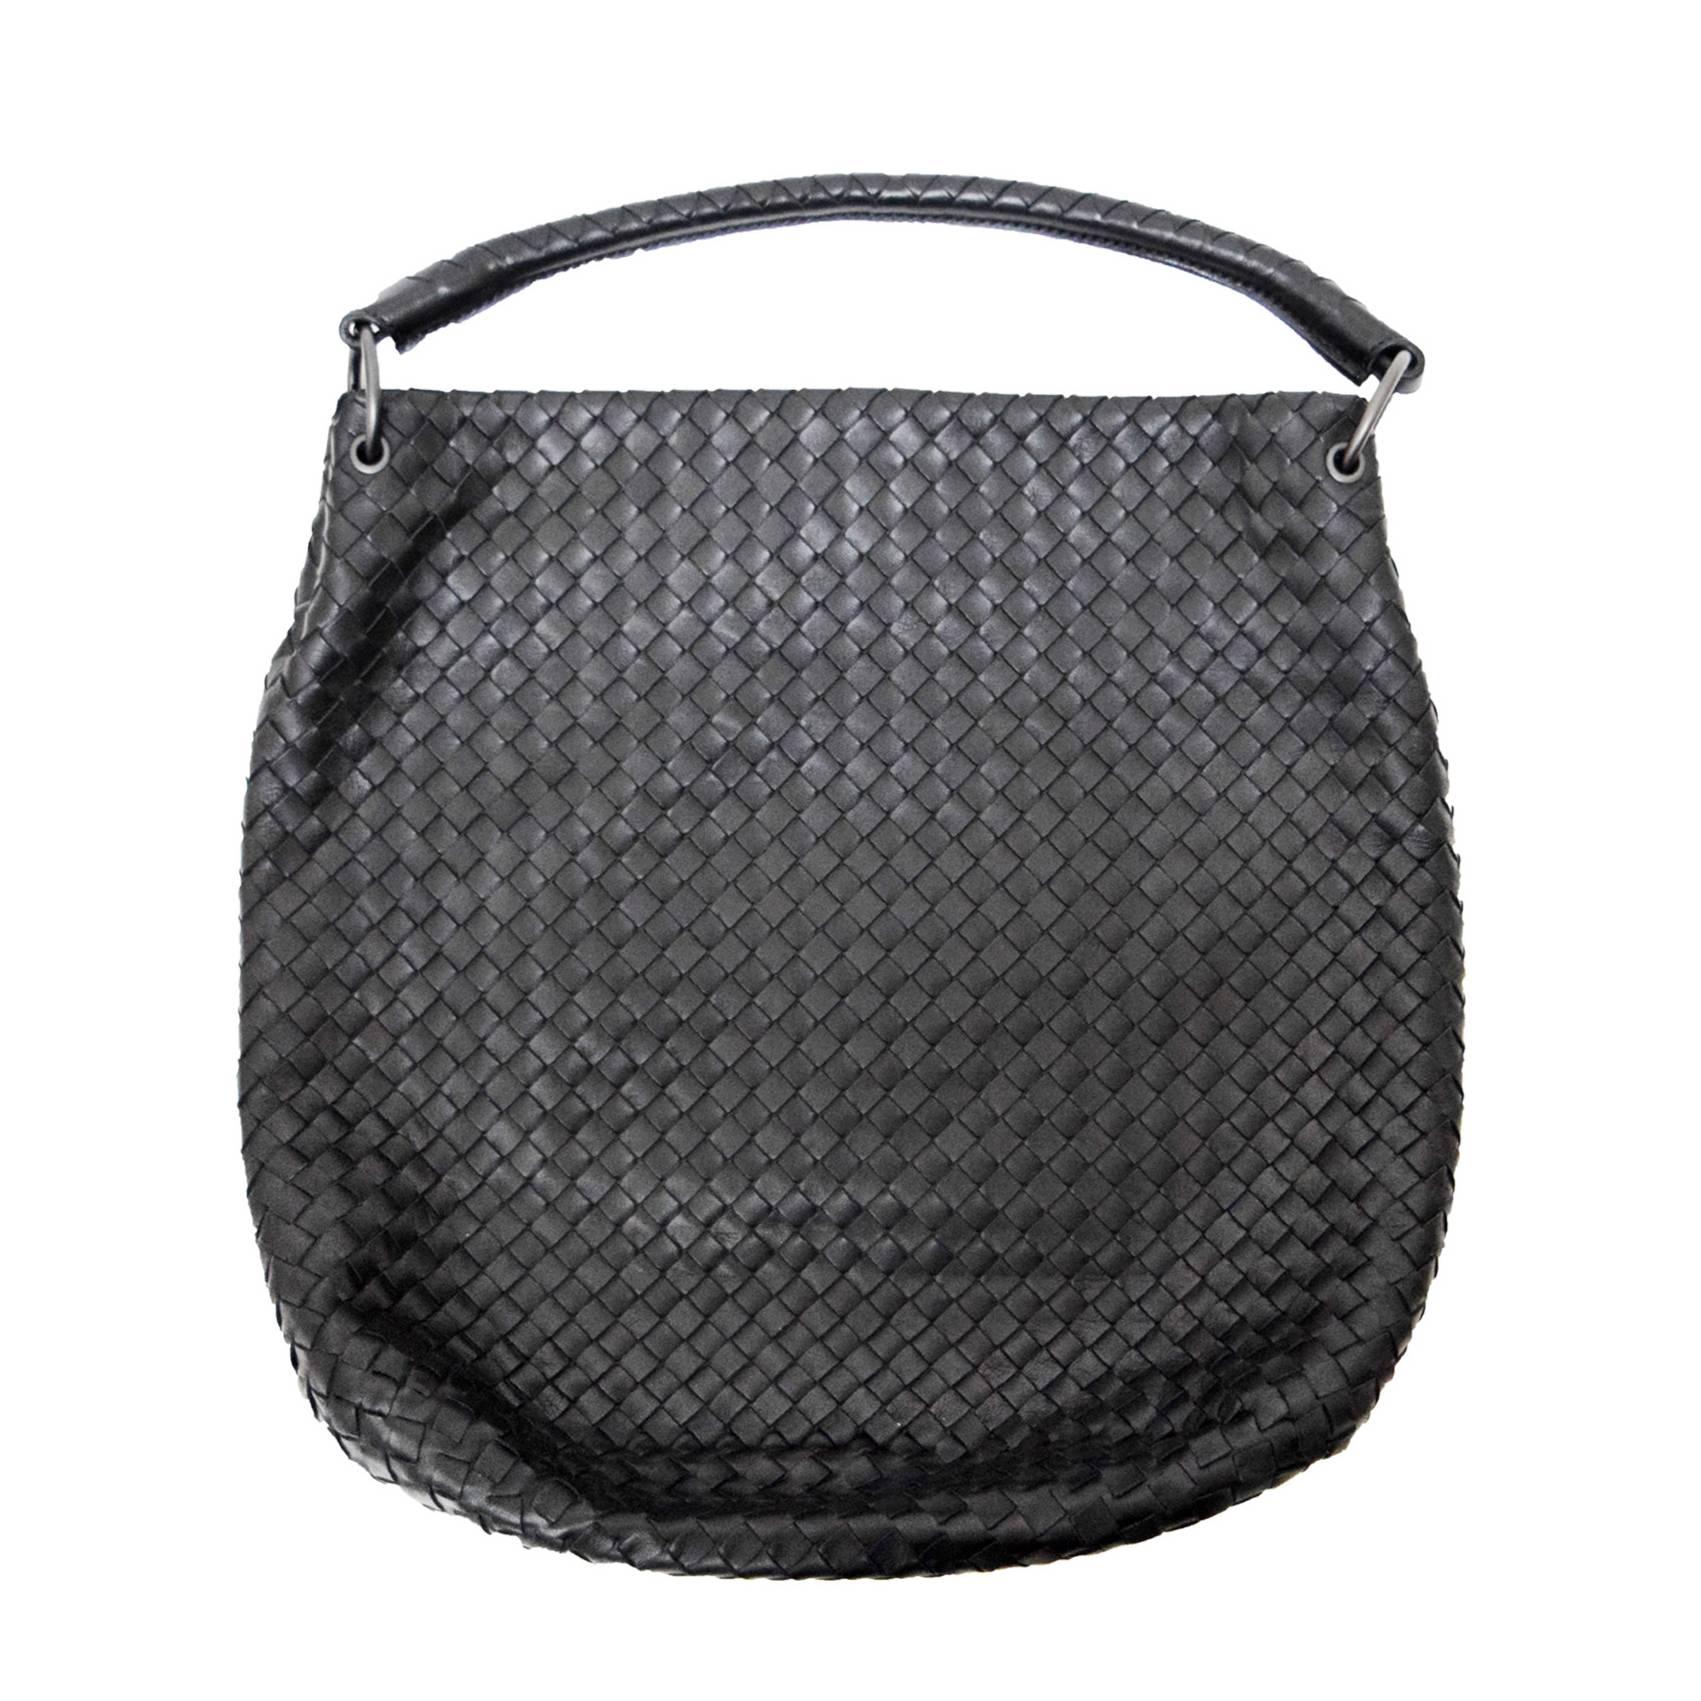 Bottega Veneta Black Woven Leather Handbag with Duster  For Sale